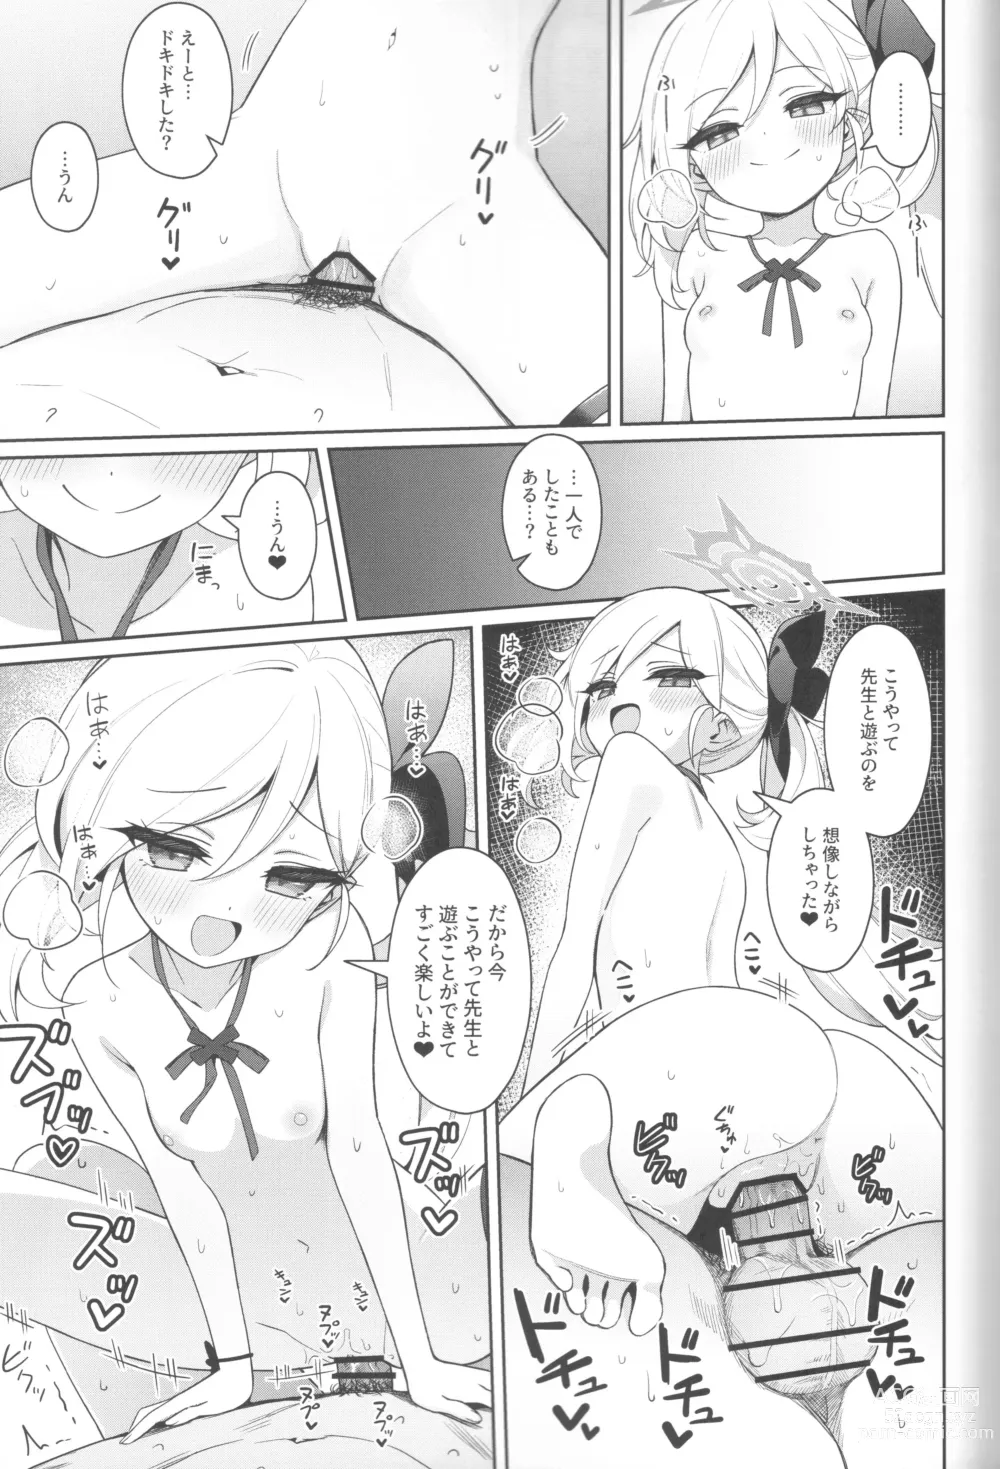 Page 19 of doujinshi Mutsuki wa Otona no Asobi ga Shitai